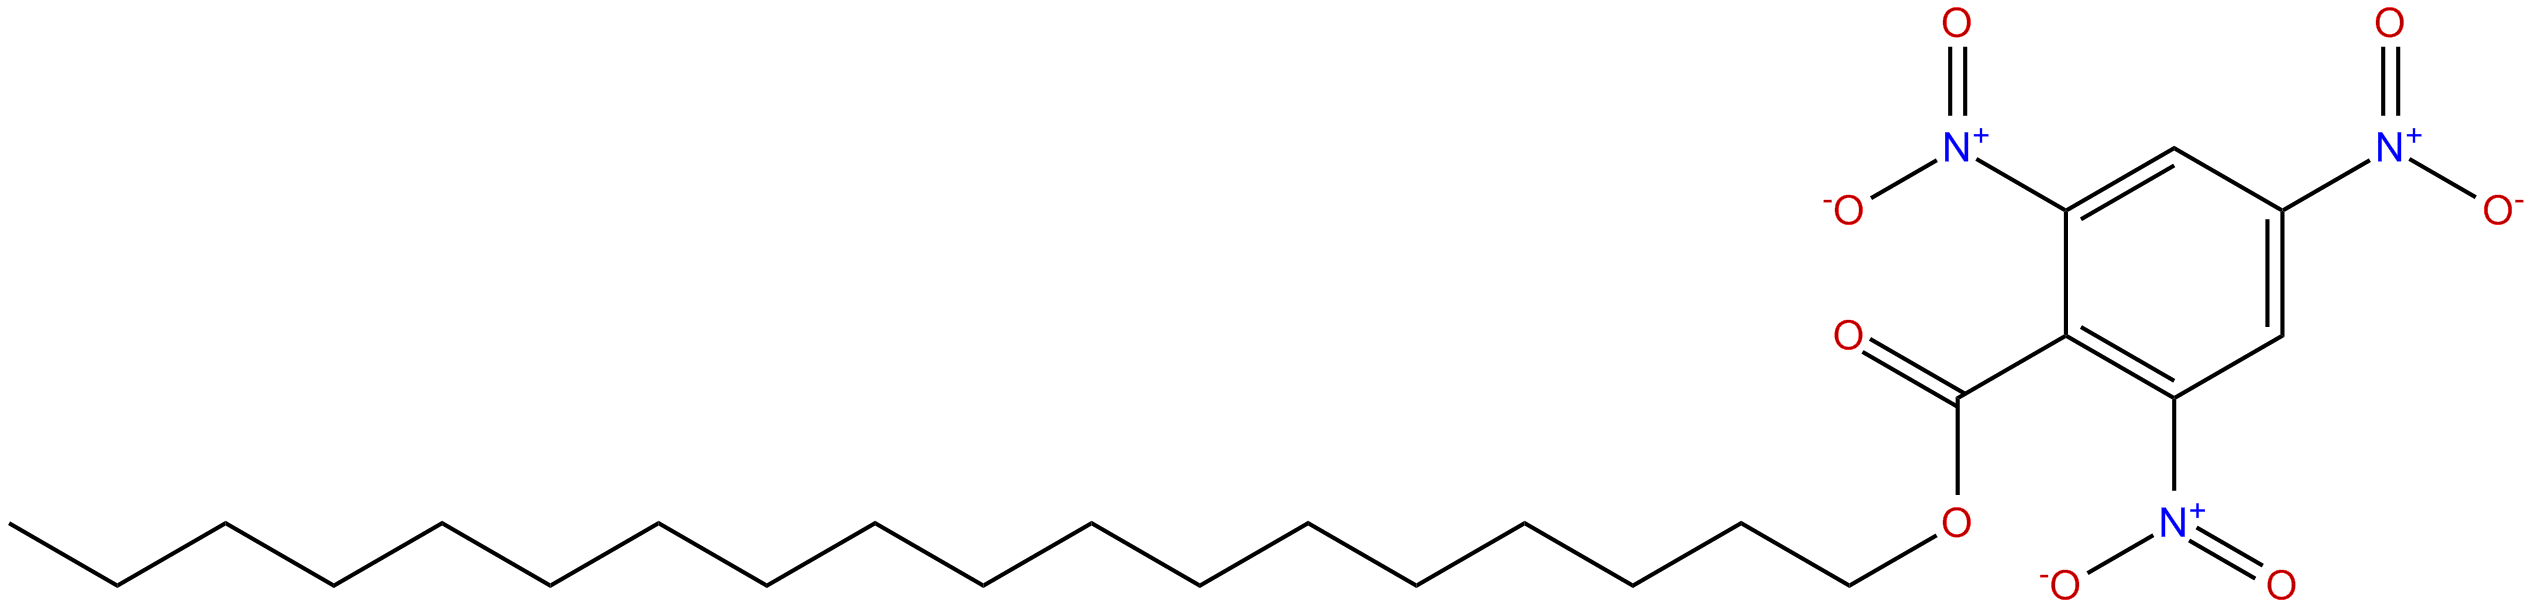 Image of octadecyl 2,4,6-trinitrobenzoate